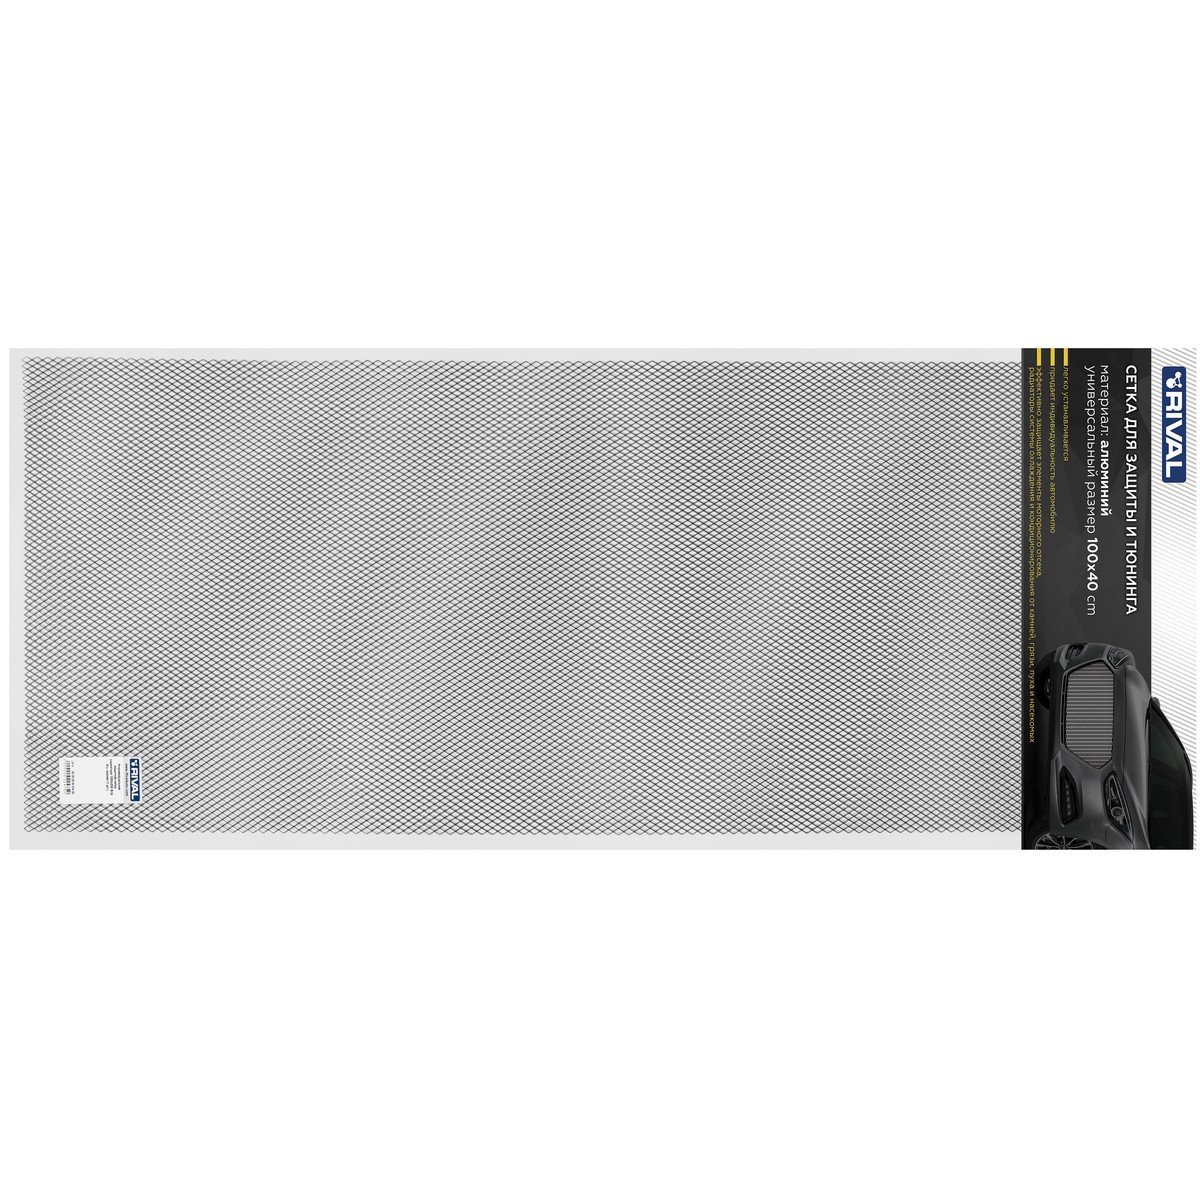 Универсальная сетка Rival 1000х400 R10 для защиты радиатора, черная, 1 шт. (индивидуальная упаковка), INDIV.ZS.1001.2